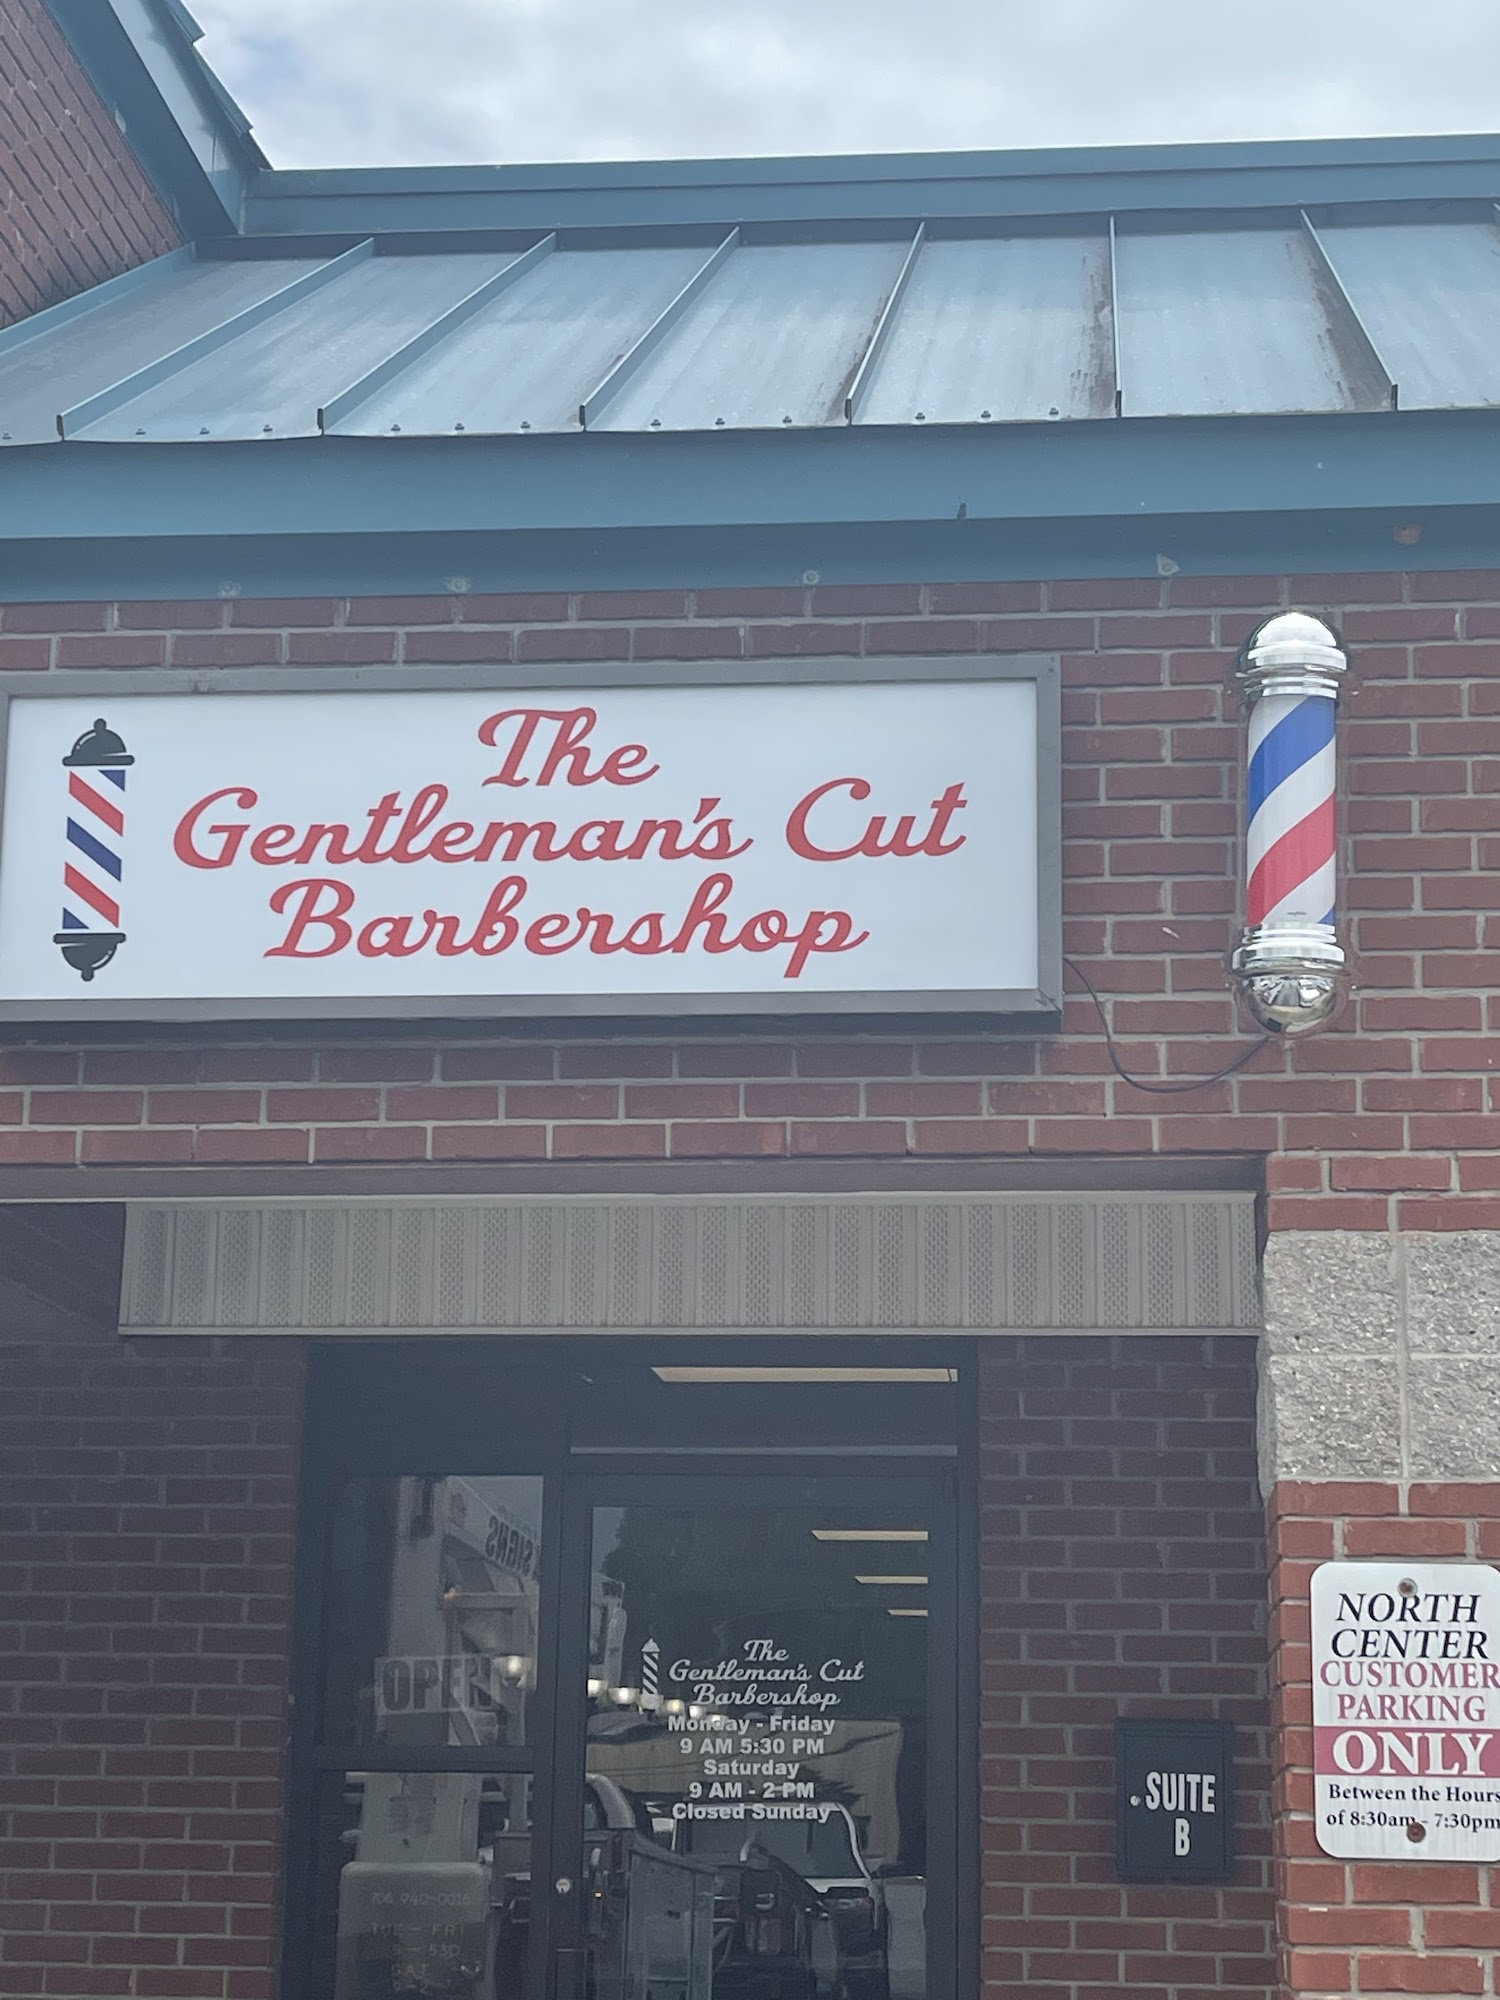 The Gentleman's Cut Barbershop